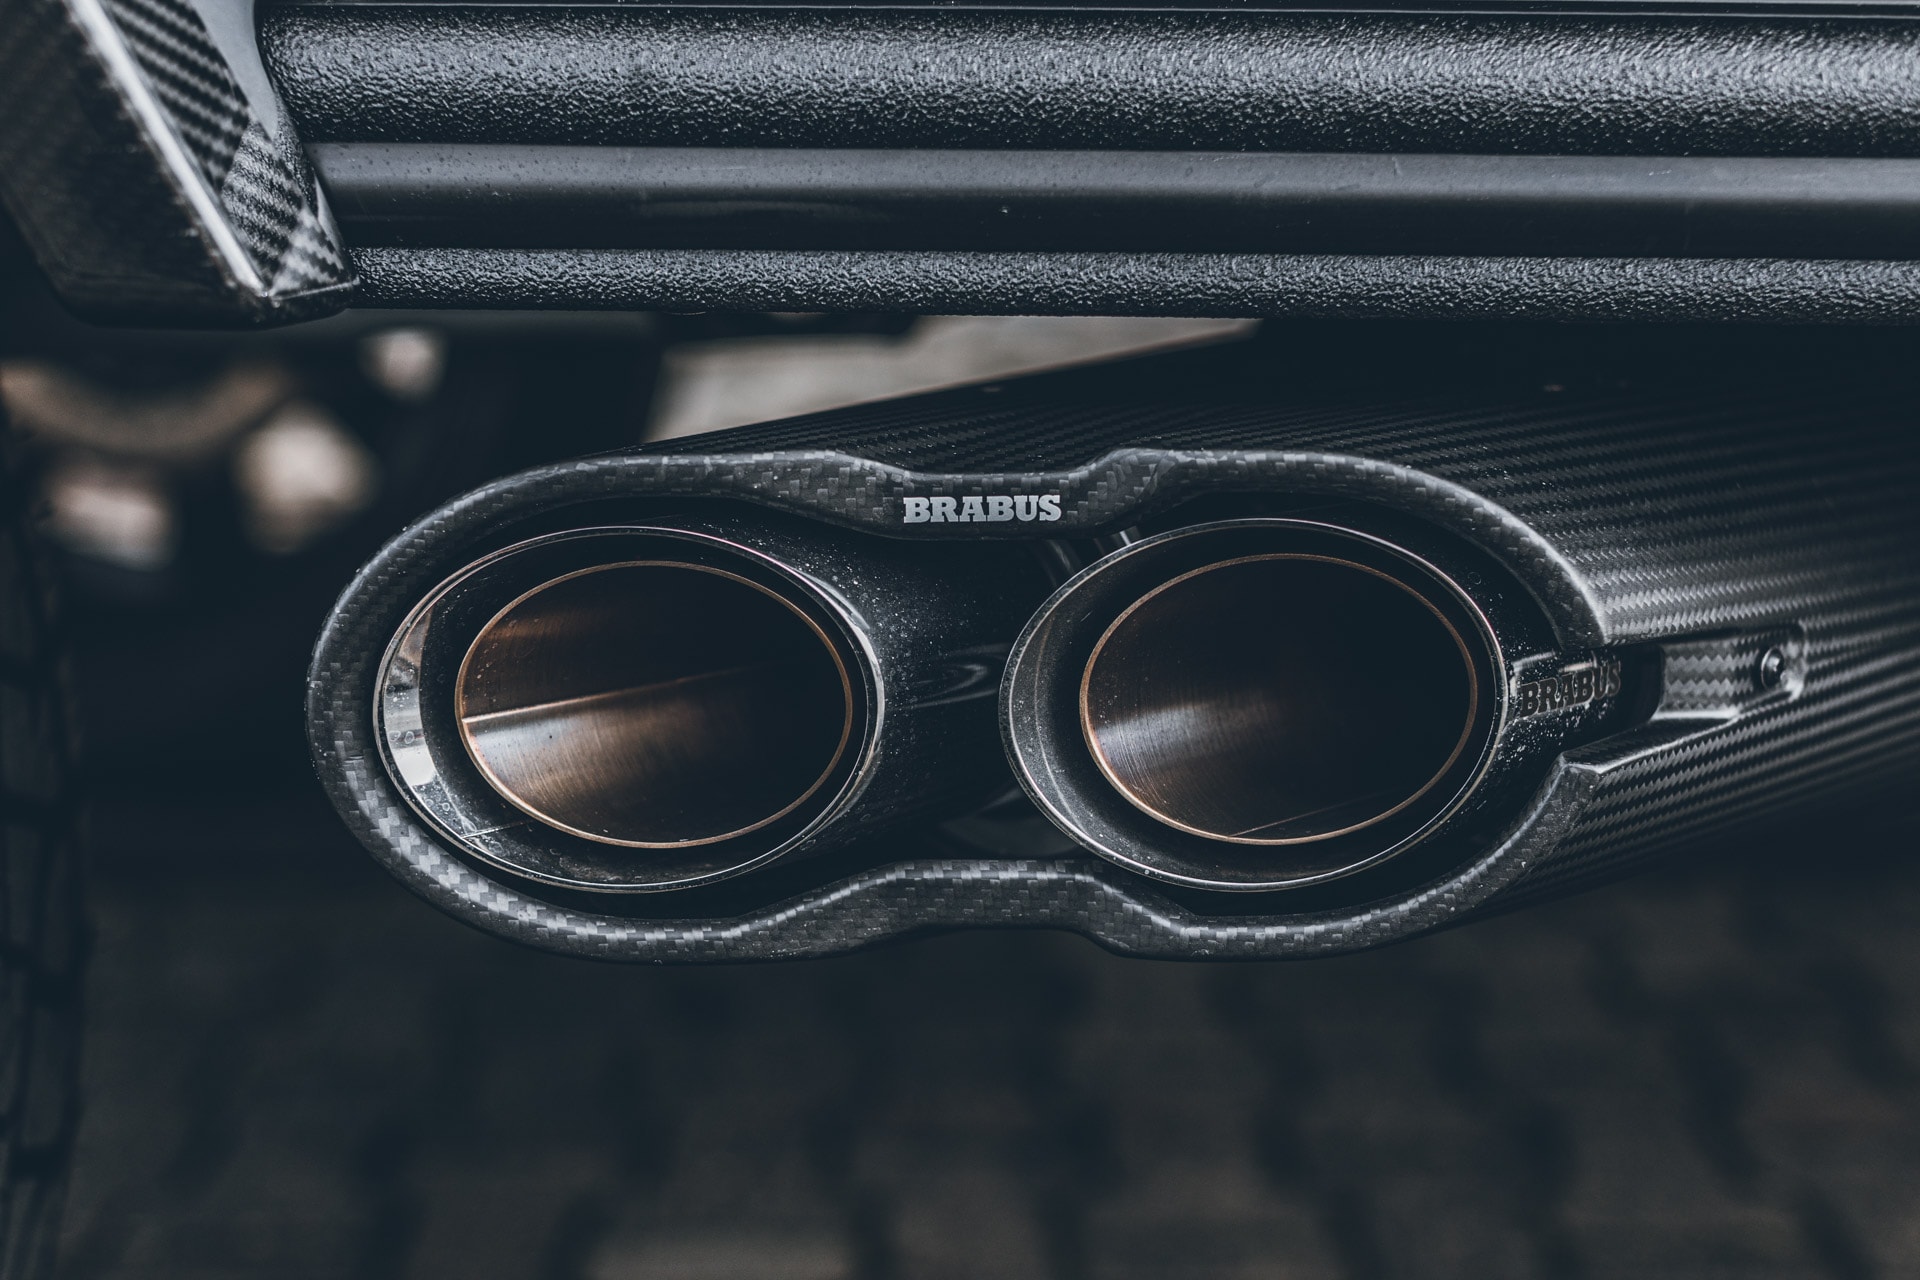 Brabus 發表全新「極黑化」Mercedes-AMG G63 貨卡改裝車型